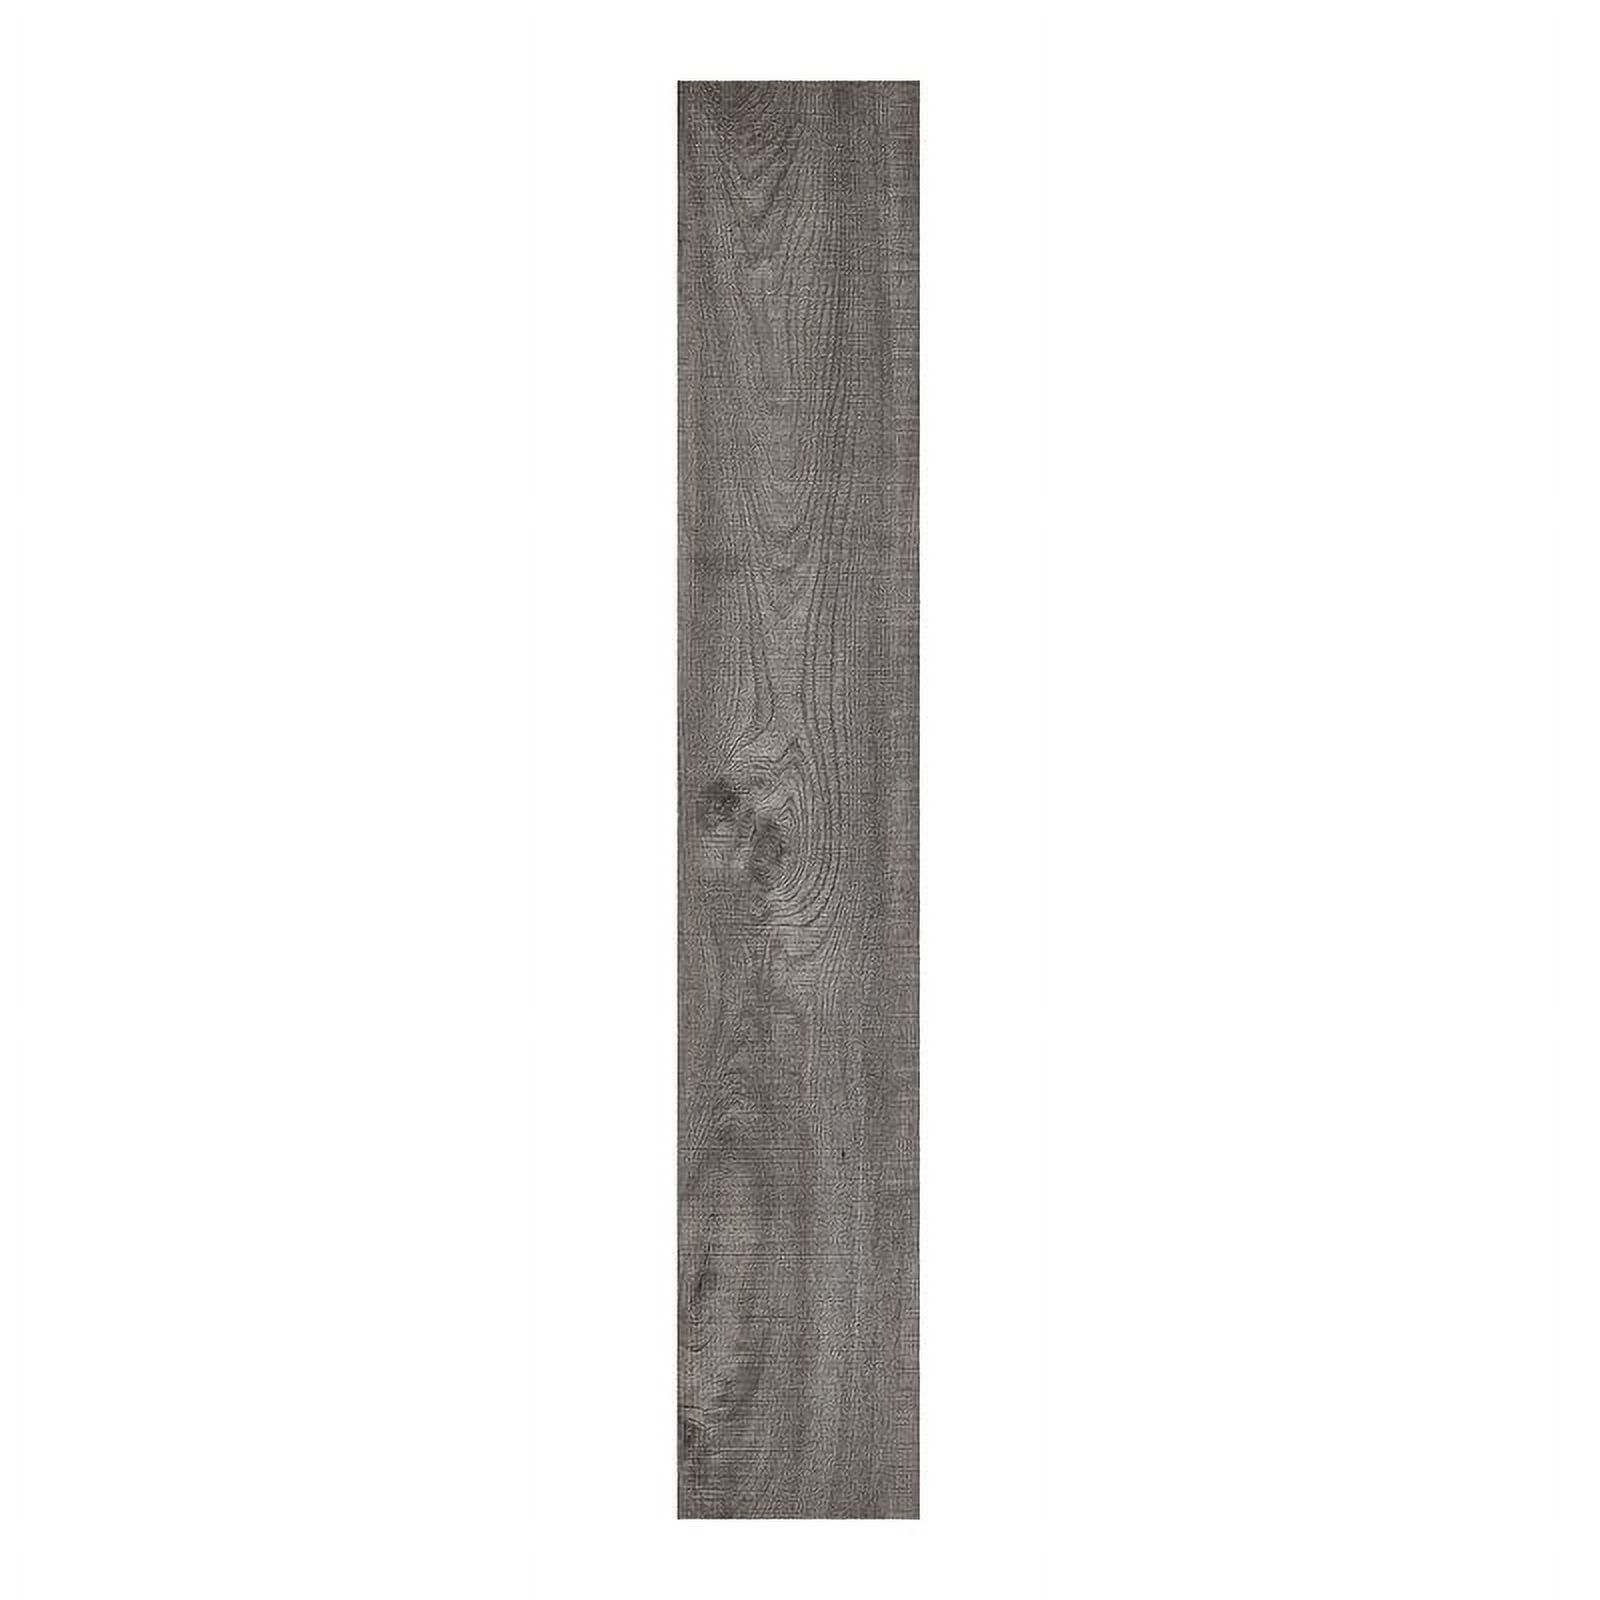 Achim Sterling Self Adhesive Vinyl Floor Planks, 10 Planks, 6 x 36, Rustic Grey - image 1 of 4